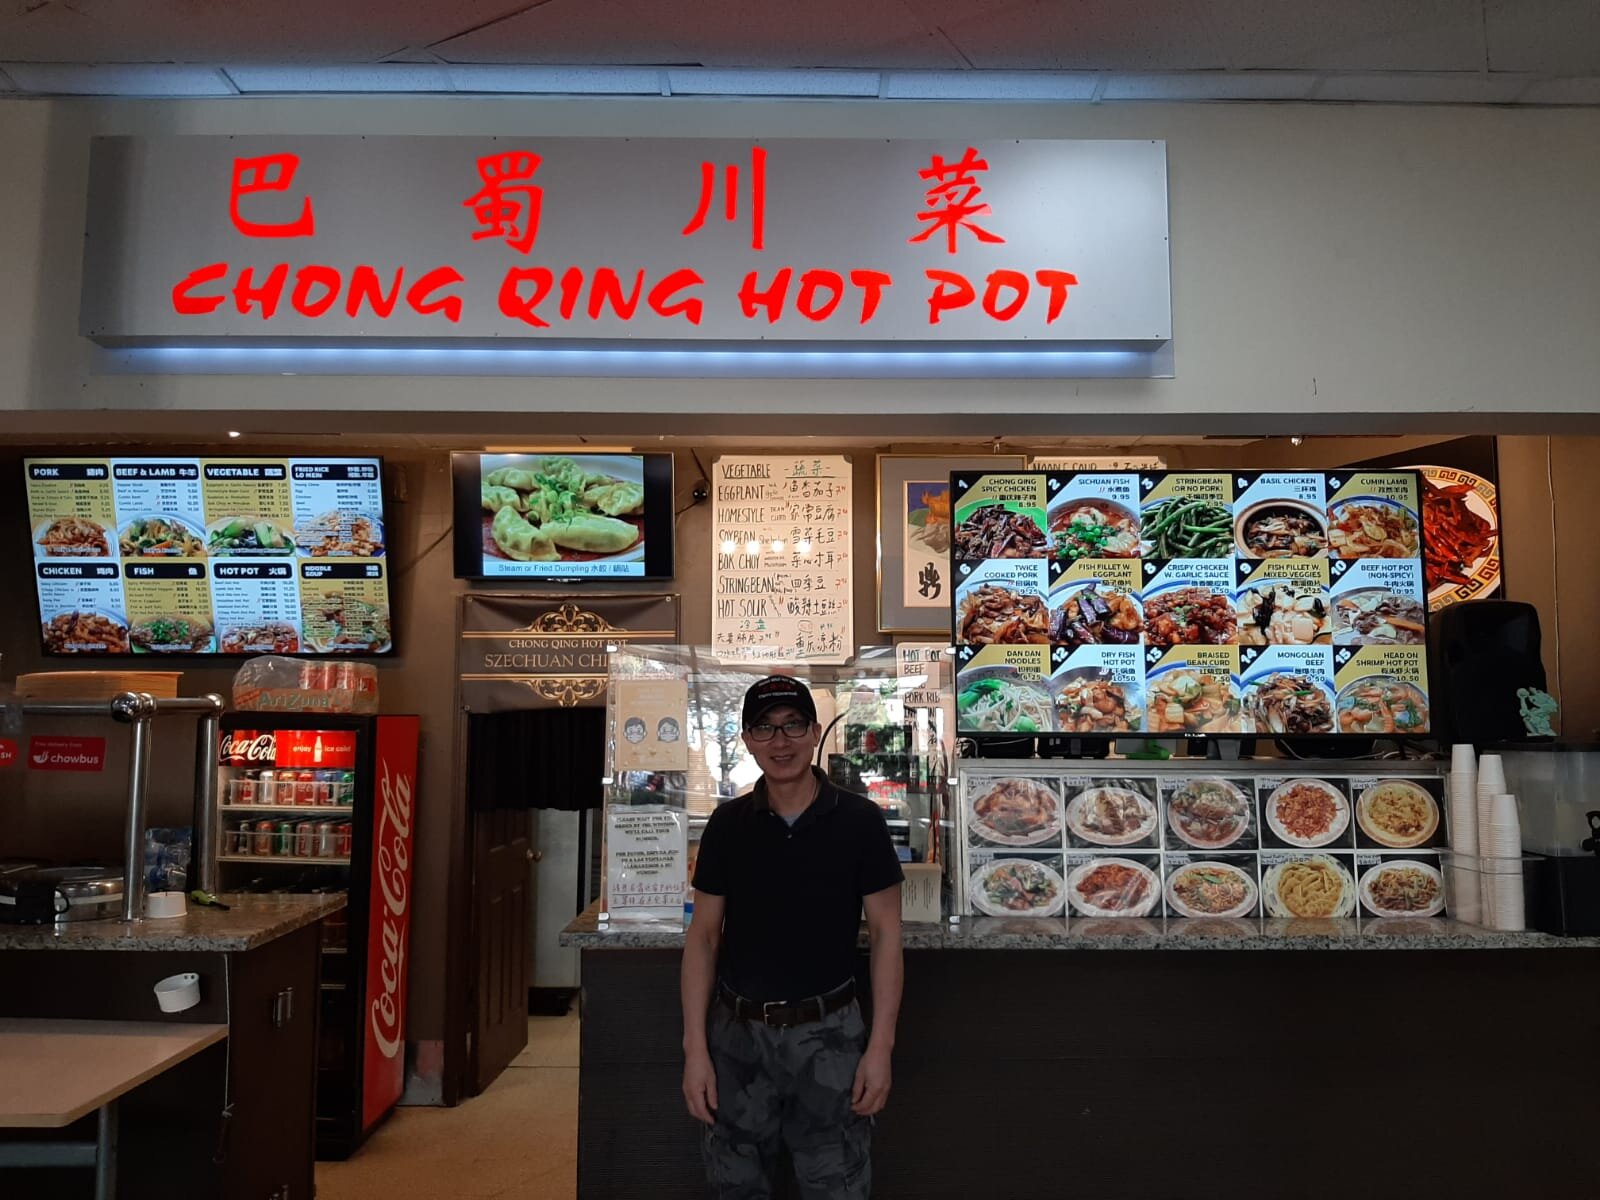 Chong Qing Hot Pot Owner.jpeg